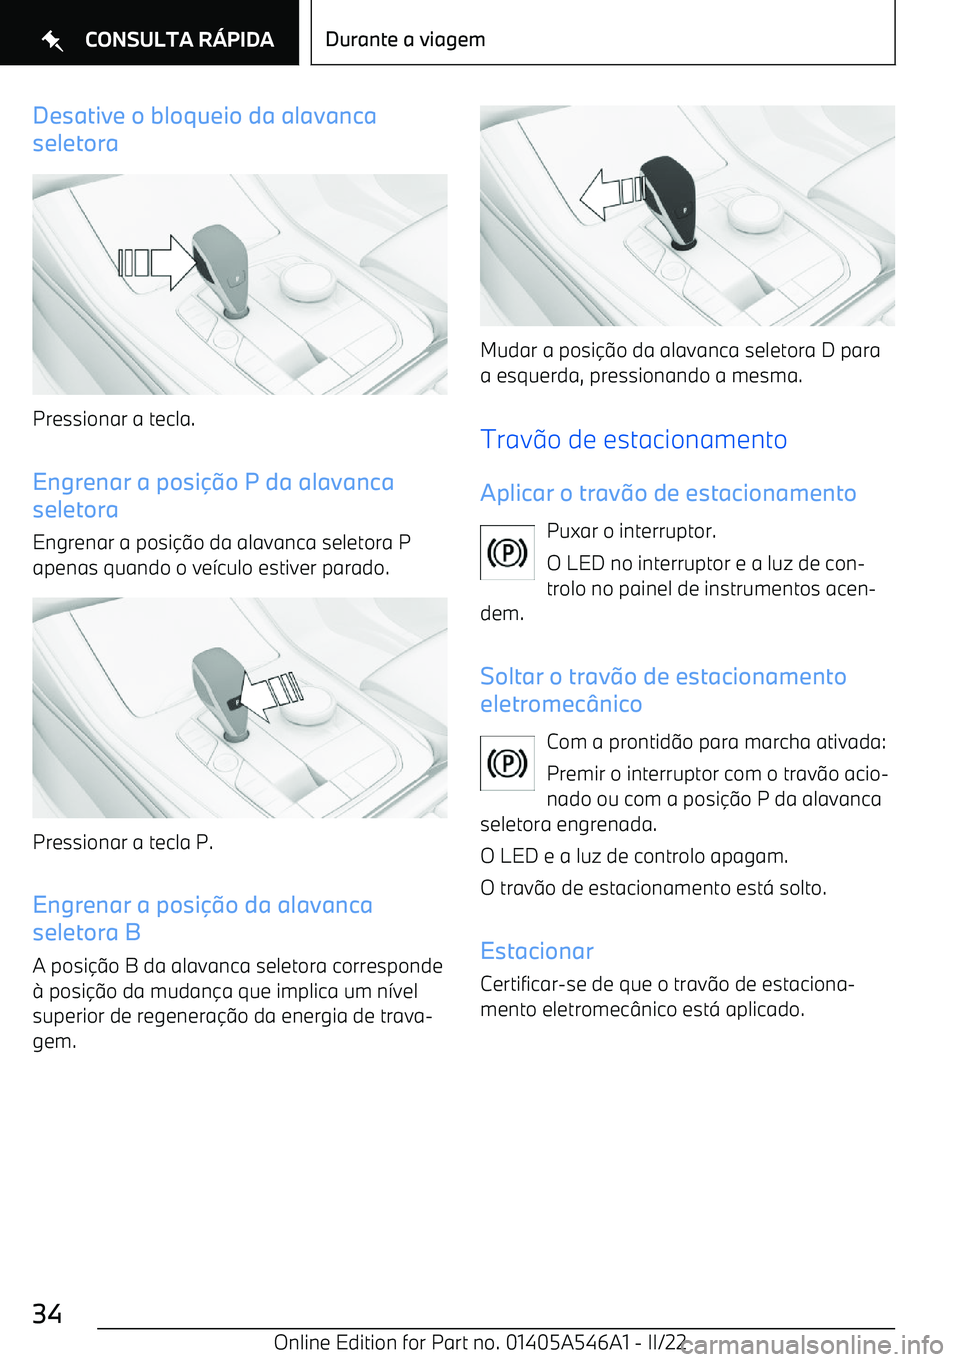 BMW I4 2022  Manual do condutor (in Portuguese) Desative o bloqueio da alavanca
seletora
Pressionar a tecla.
Engrenar a posi